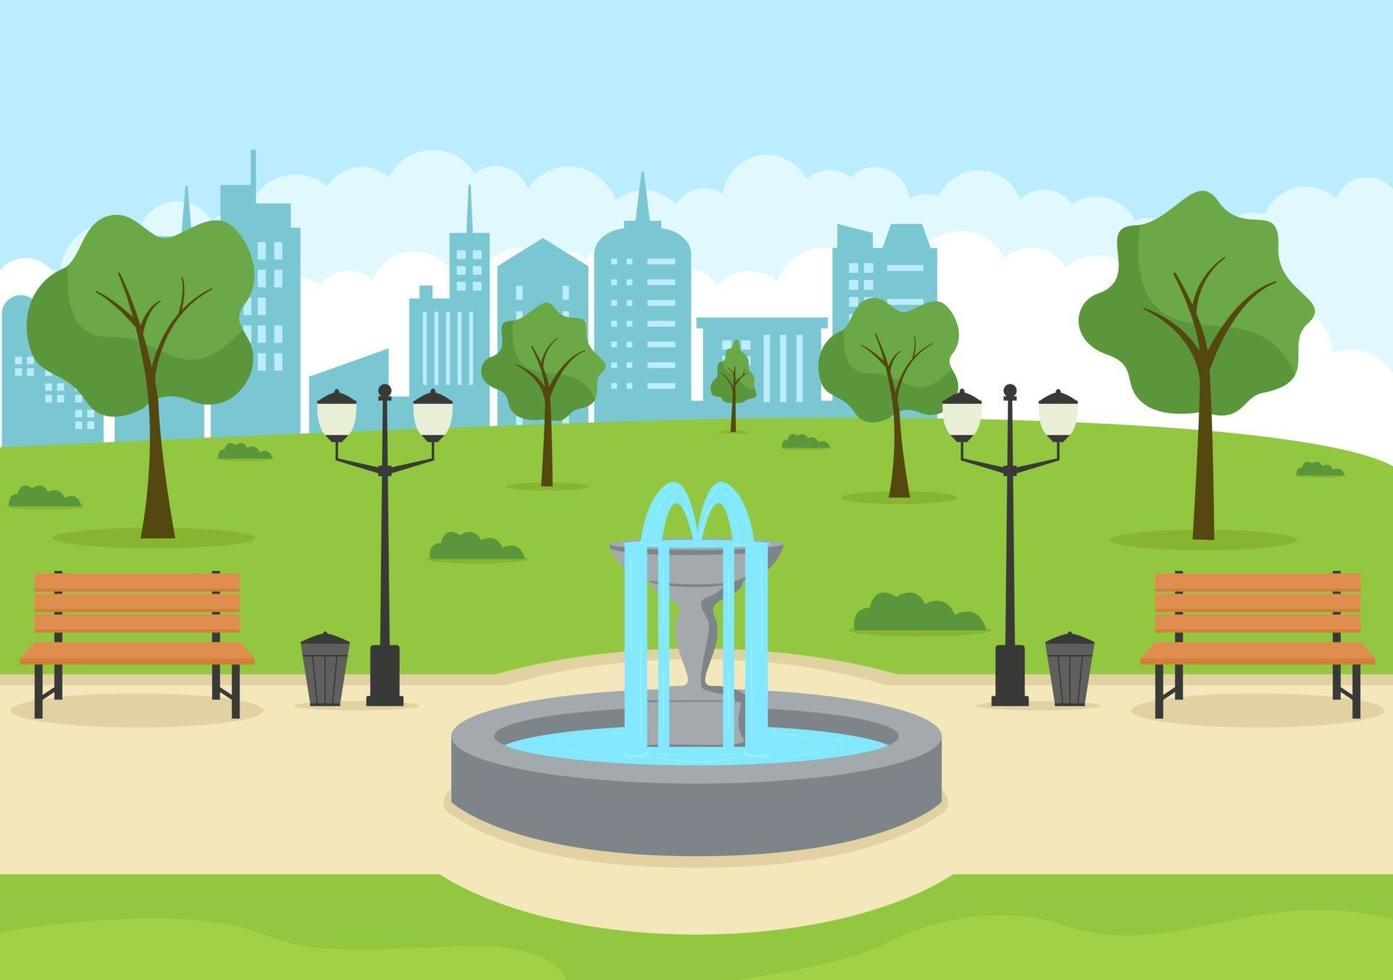 illustrazione del parco cittadino per persone che praticano sport, relax, gioco o ricreazione con albero verde e prato. scenario sfondo urbano vettore